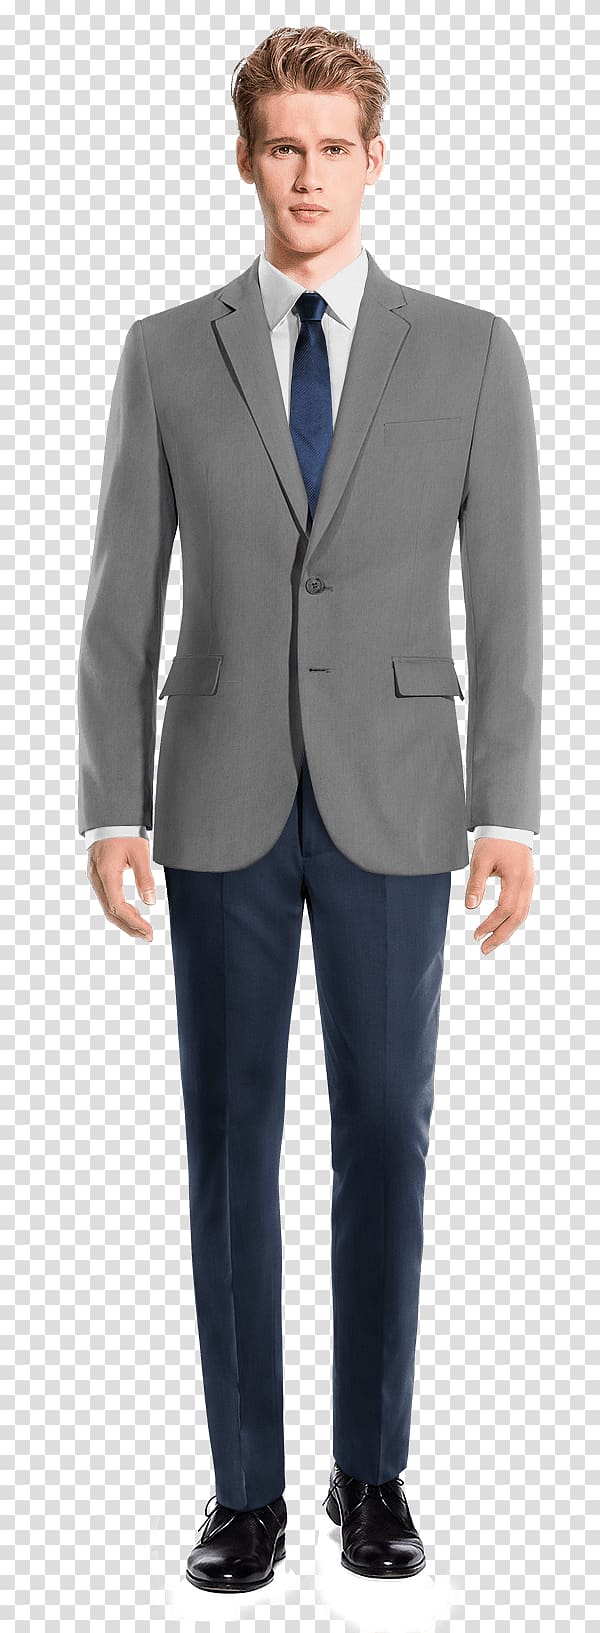 Mao suit Wool Blazer Corduroy, Suit Pants transparent background PNG clipart